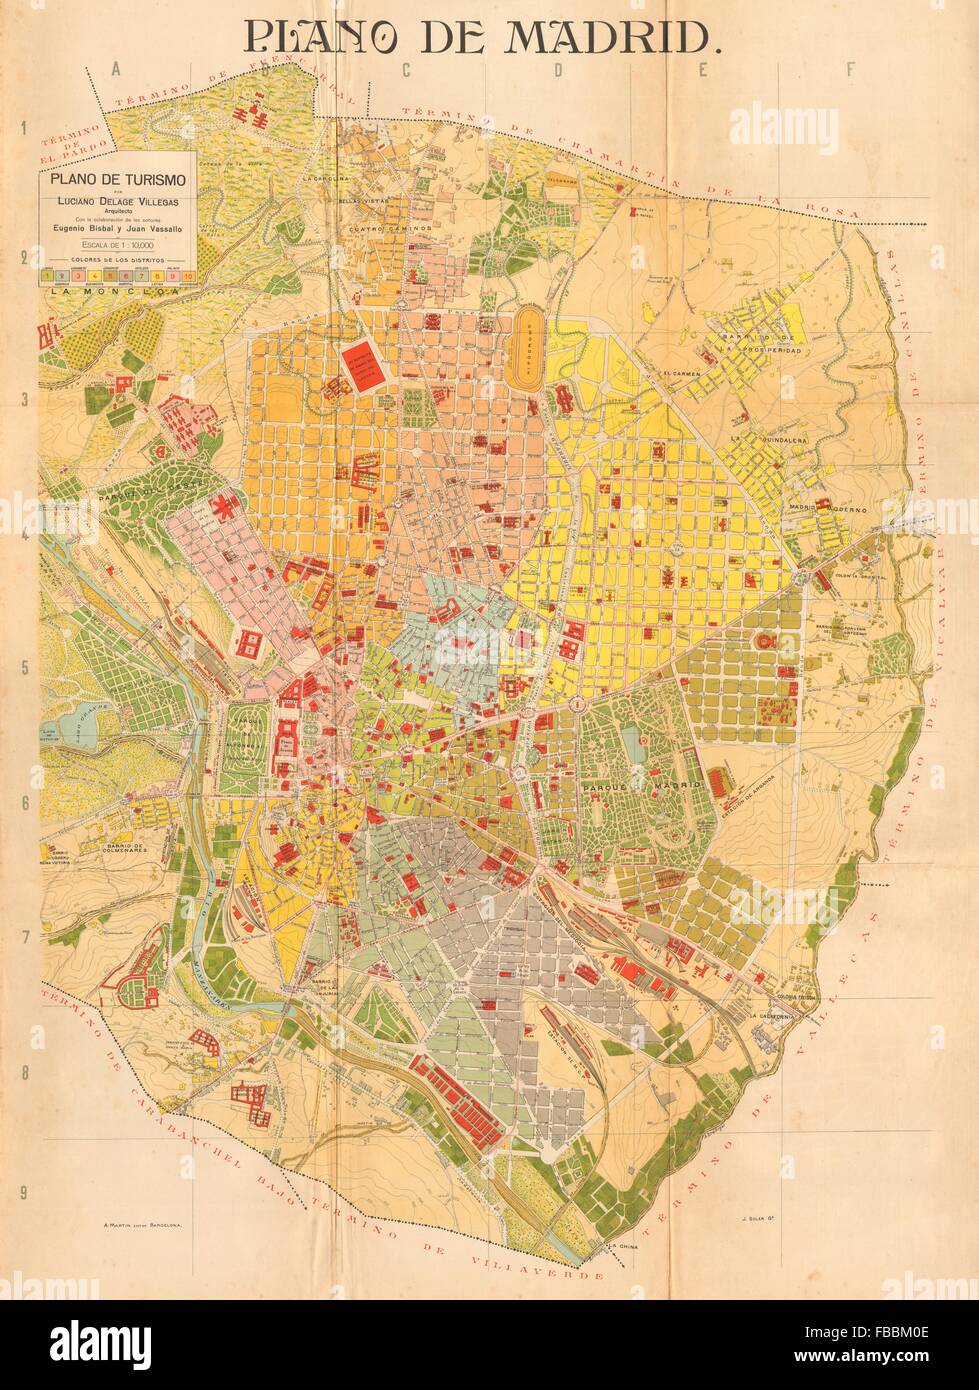 MADRID. Plano antiguo de la cuidad. Antique town/city plan. MARTIN, c1911 map Stock Photo